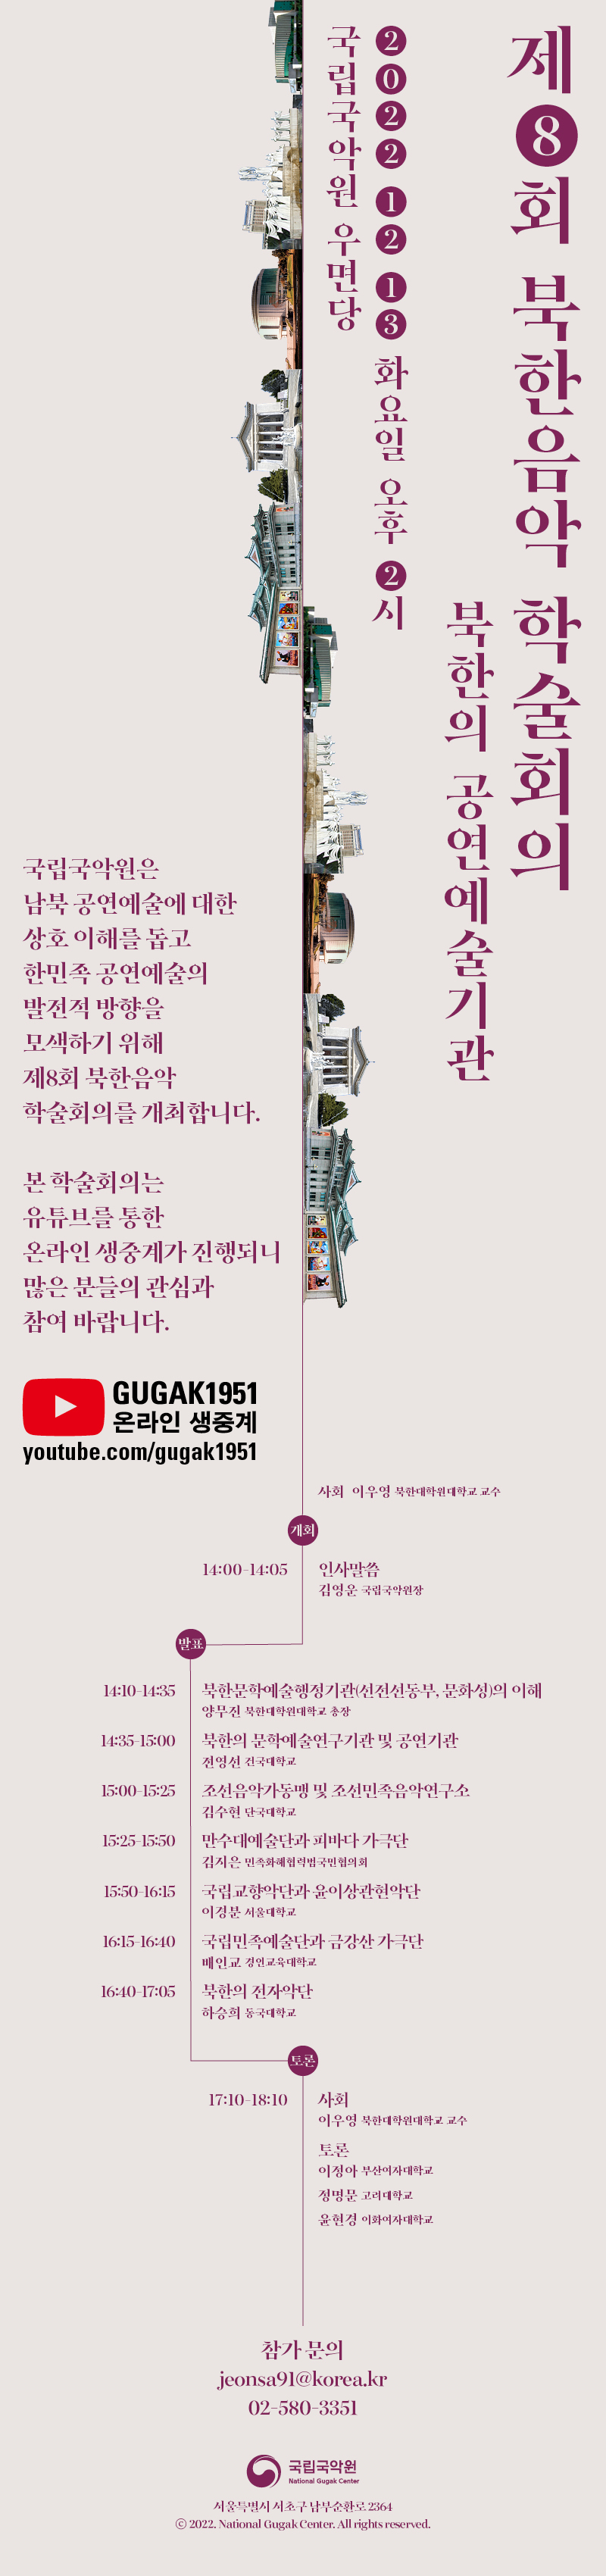 제 8회 북한음악 학술회의
북한의 공연예술기관

2022 12 13 화요일 오후 2시
국립국악원 우면당

국립국악원은
남북 공연예술에 대한
상호 이해를 돕고
한민족 공연예술의
발전적 방향을
모색하기 위해
제8회 북한음악
학술회의를 개최합니다.

본 학술회의는
유튜브를 통한
온라인 생중계가 진행되니
많은 분들의 관심과 
참여 바랍니다.

GUGAK 1951
온라인 생중계
youtube.com/gugak1951

사회 이우영 북한대학원 대학교 교수

개회
14:00-14:05 인사말씀 김영운 국립국악원장

발표
14:10-14:35 북한문학예술행정기관(선전선동부, 문화성)의 이해 양무진 북한대학원대학교 총장
14:35-15:00 북한의 문학예술연구기관 및 공연기관 전영선 건국대학교
15:00-15:25 조선음악가동맹 및 조선민족음악연구소 김수현 단국대학교
15:25-15:50 만수대예술단과 피바다 가극단 김지은 민족화해협력범국민협의회
15:50-16:15 국립교향악단과 윤이상관현악단 이경분 서울대학교
16:15-16:40 국립민족예술단과 금강산 가극단 배인교 경인교육대학교
16:40-17:05 북한의 전자악단 하승희 동국대학교

토른
17:10-18:10 
사회 이우영 북한대학원대학교 교수
토론 이정아 부산여자 대학교, 정명문 고려대학교, 윤현경 이화여자대학교

참가문의
jeonsa91@korea.kr
02-580-3351

국립국악원
서울특별시 서초구 남부순환로 2364
2022 National Gugak Center. All rights reserved.